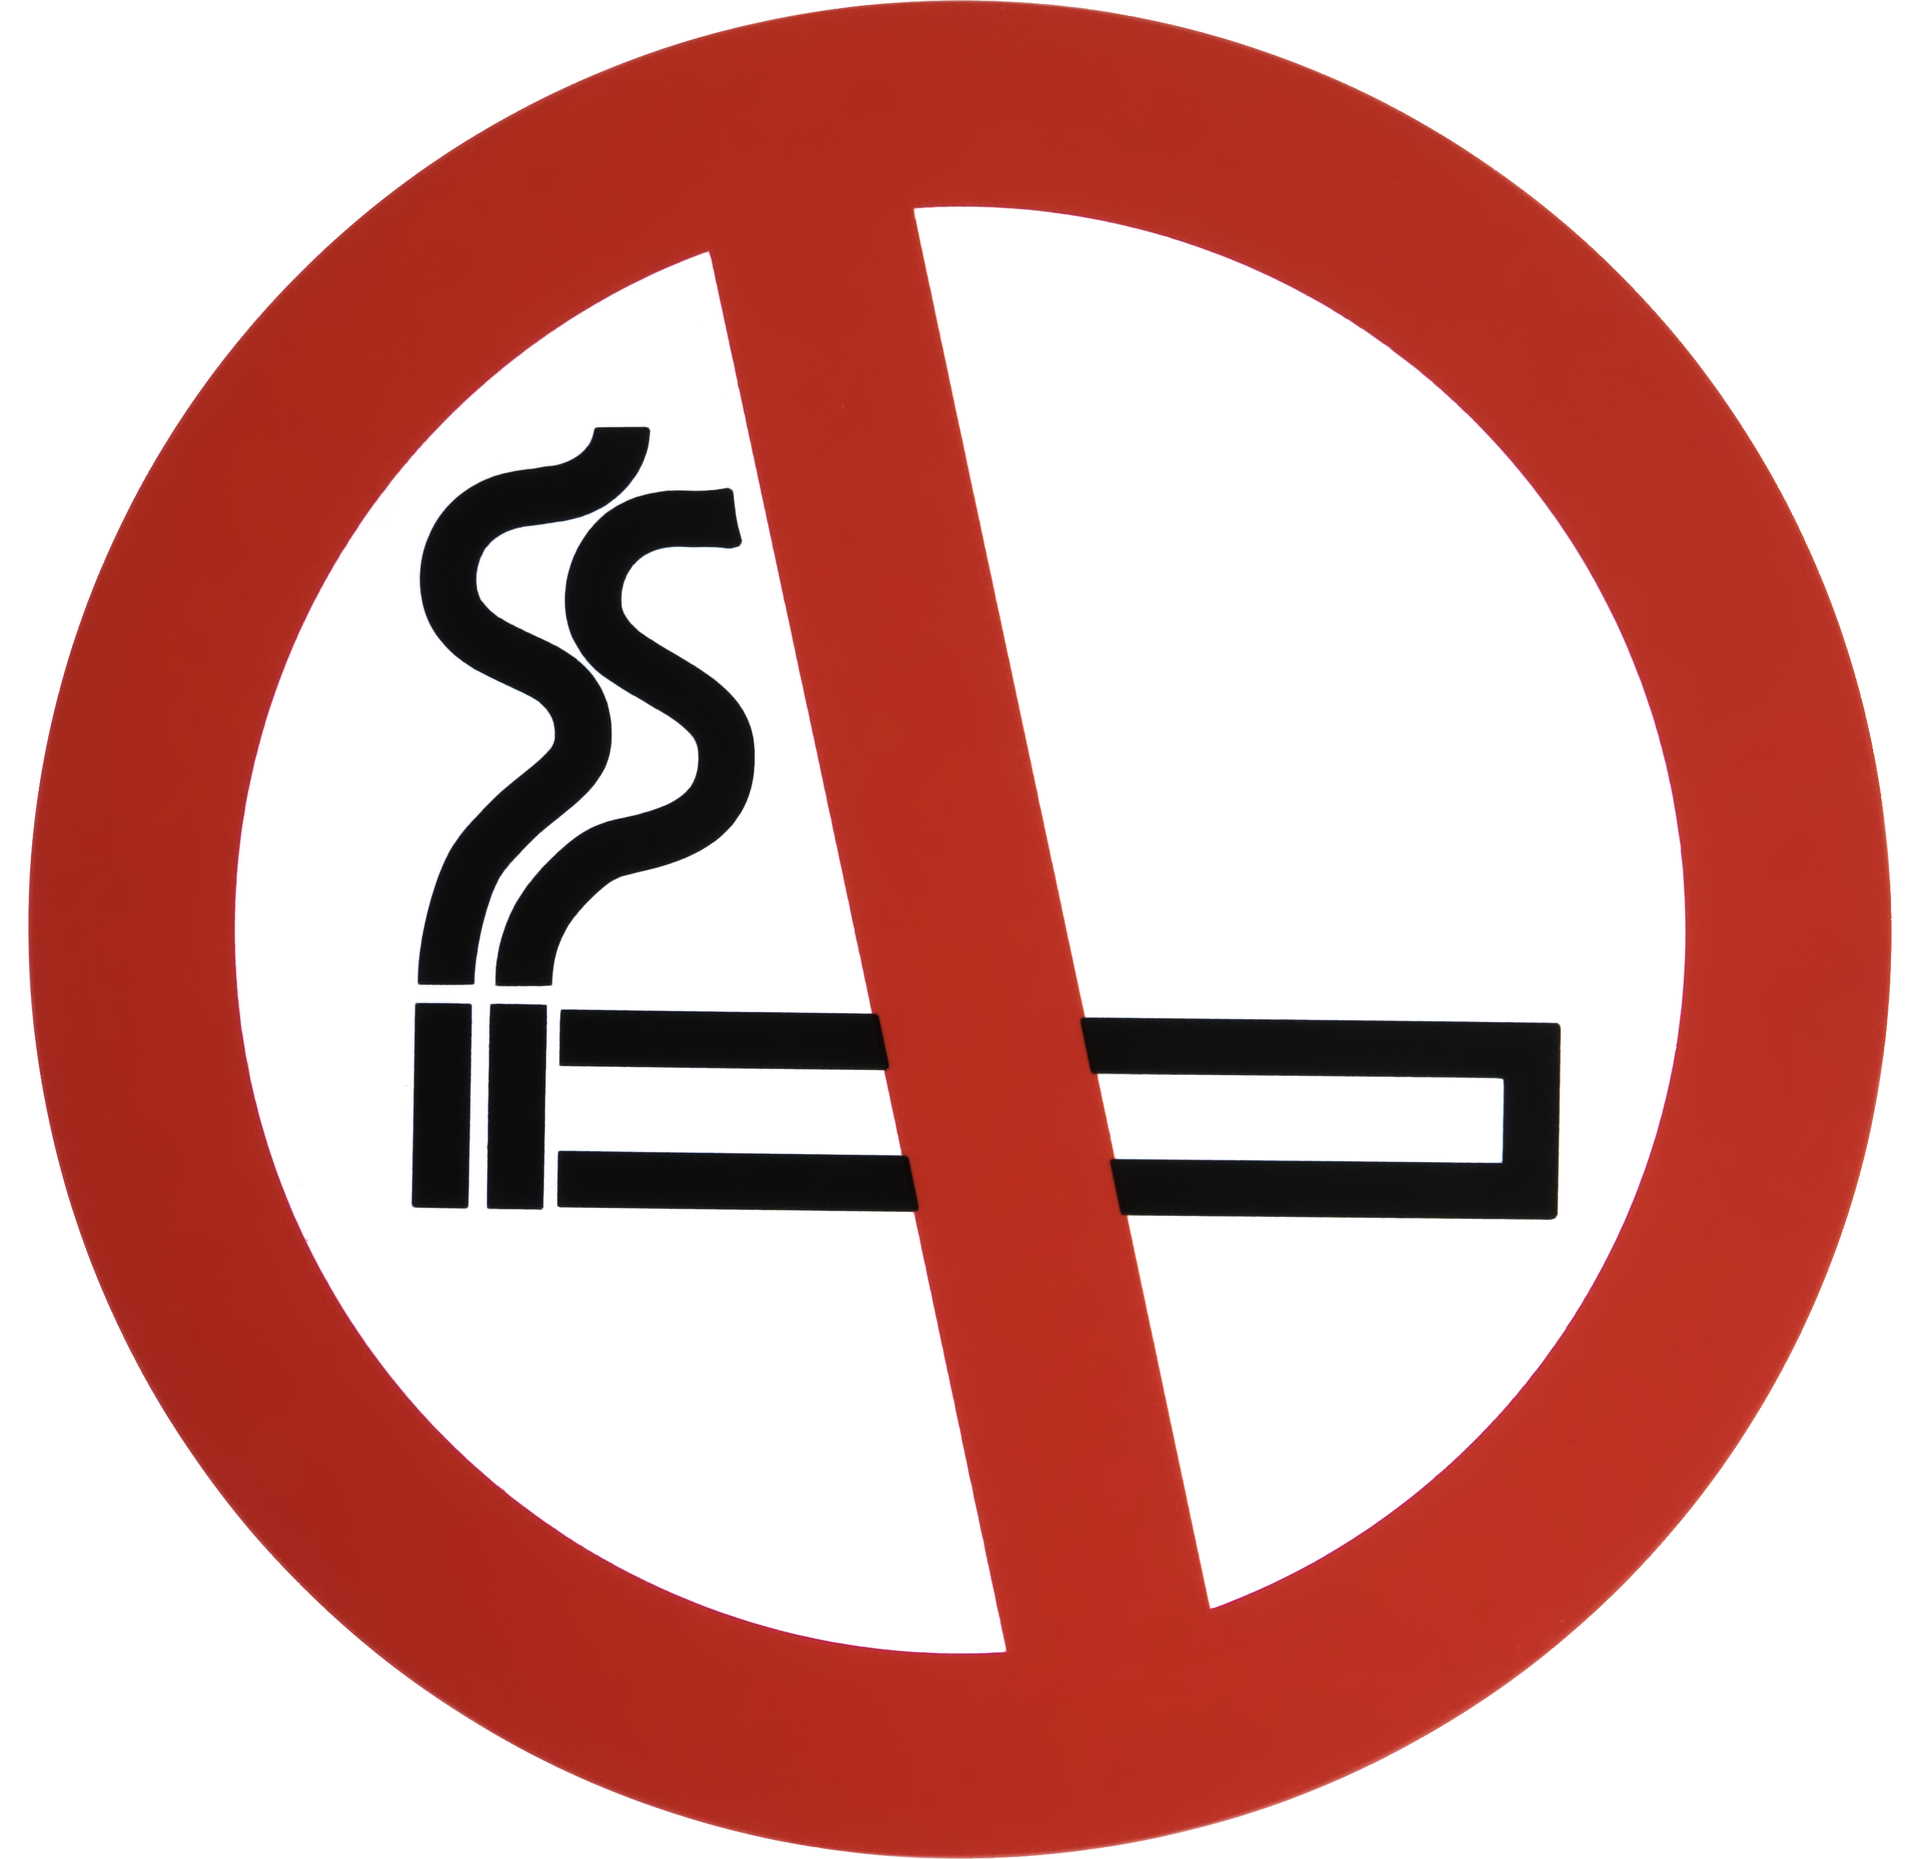 Tupakointi kielletty BB-talossa tästä päivästä alkaen. Kuva: © 2018 Snap_it / Pixabay.